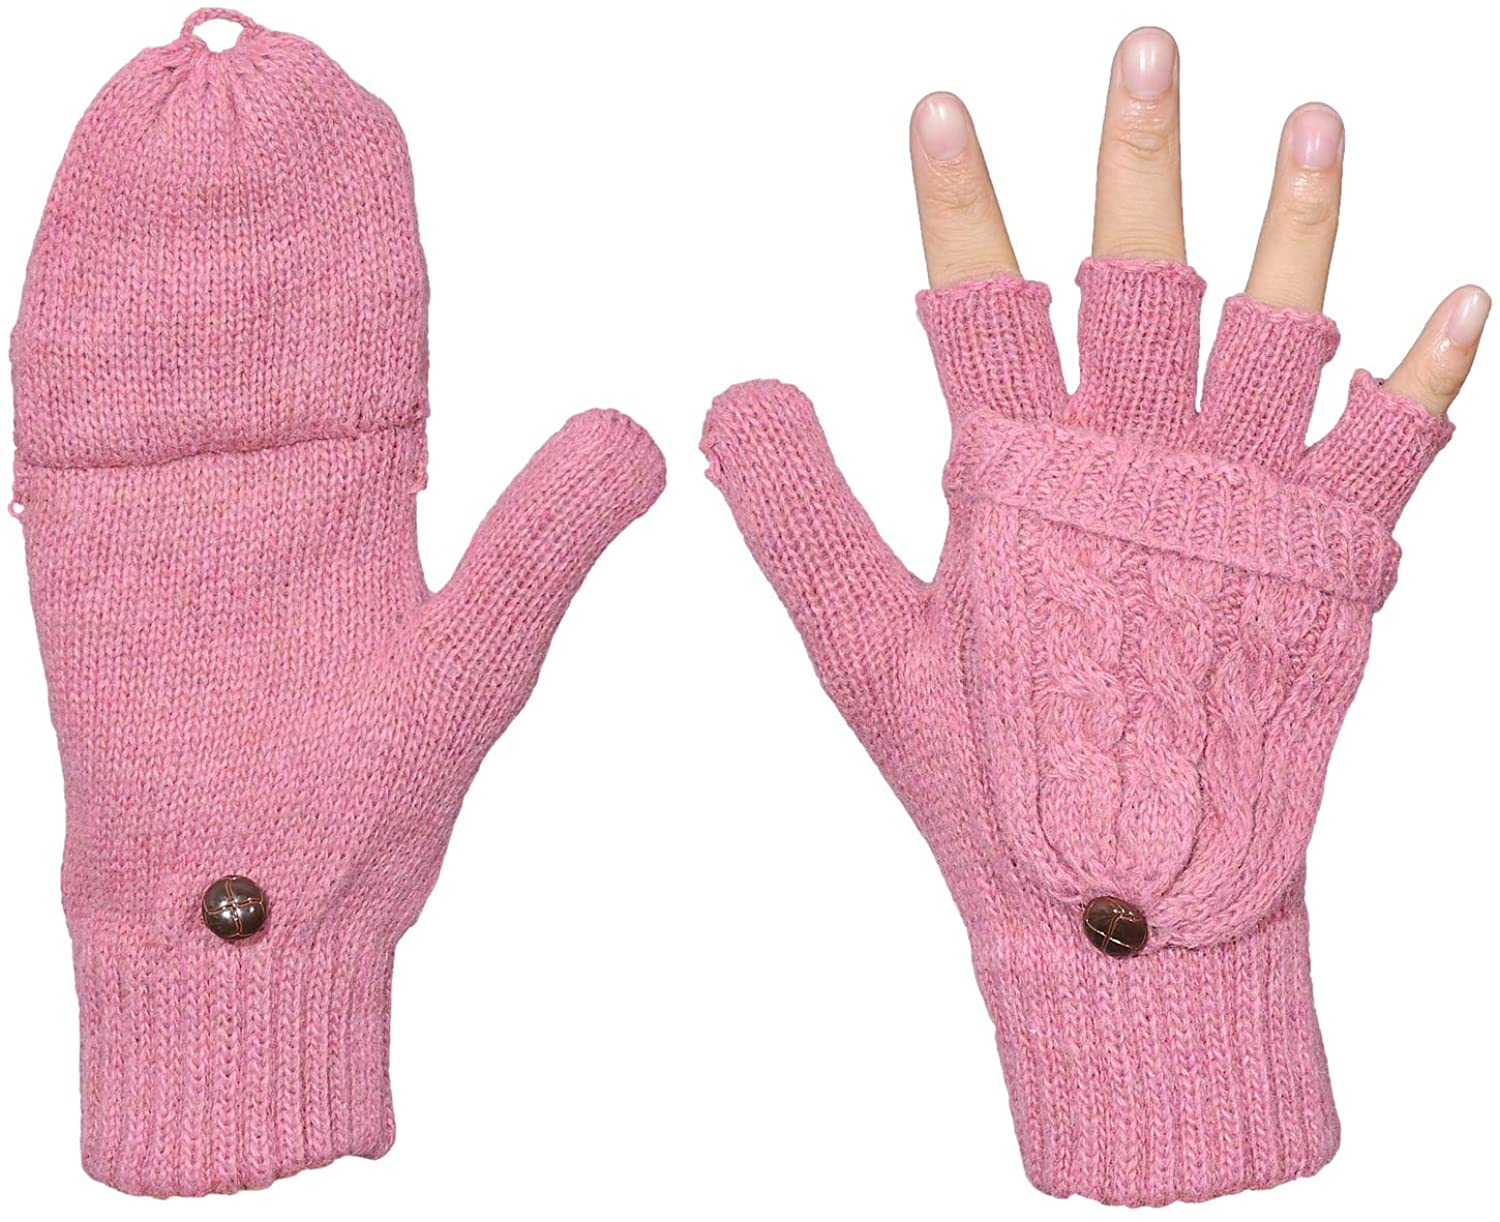 Women’s Winter Gloves Warm Wool Knitted Convertible Fingerless Mittens ...